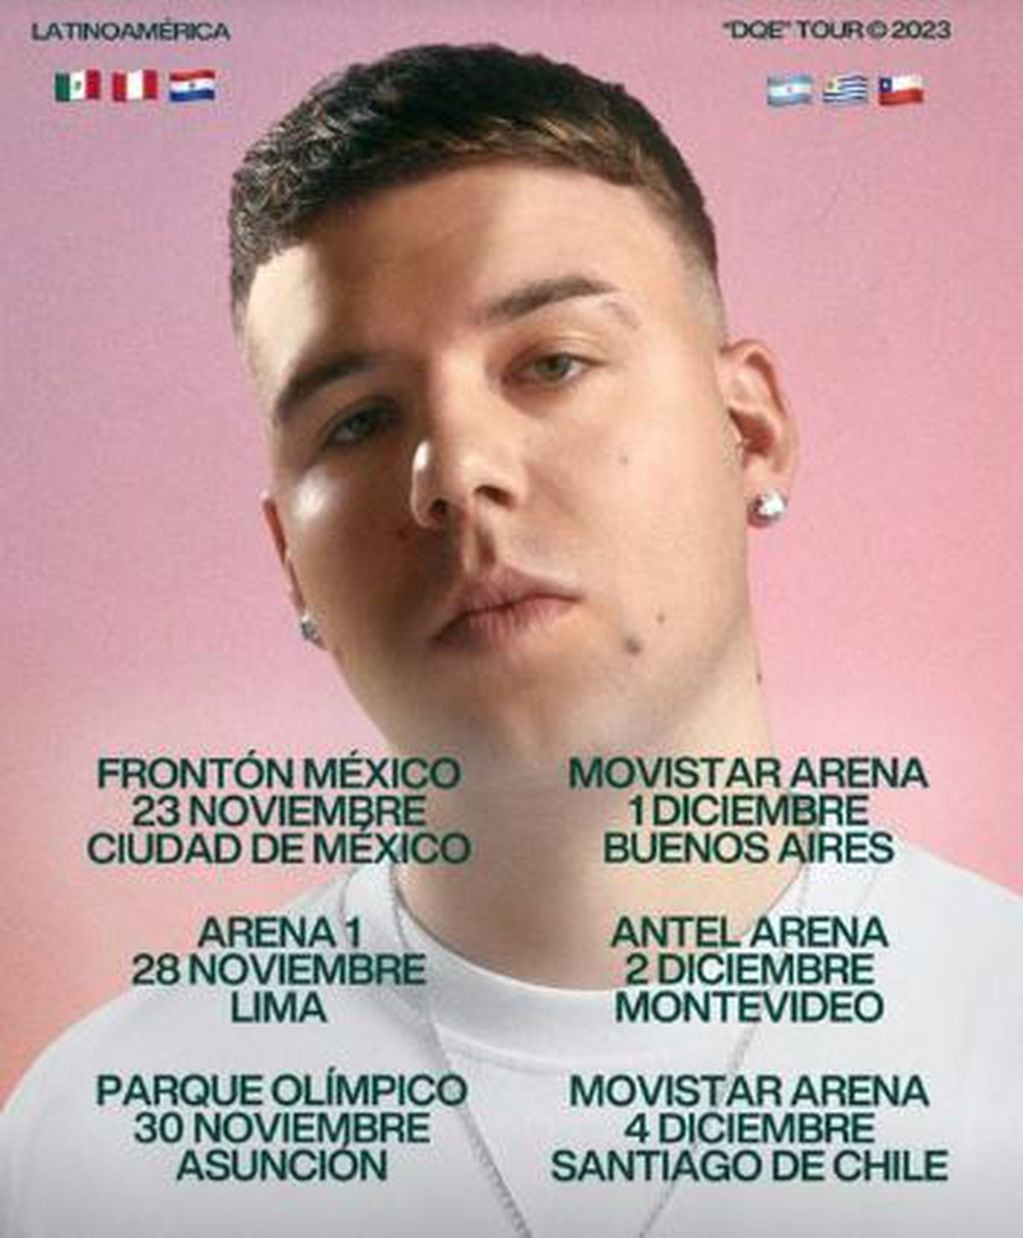 Quevedo anunció un show en el Movistar Arena: cuándo será y precios de entradas